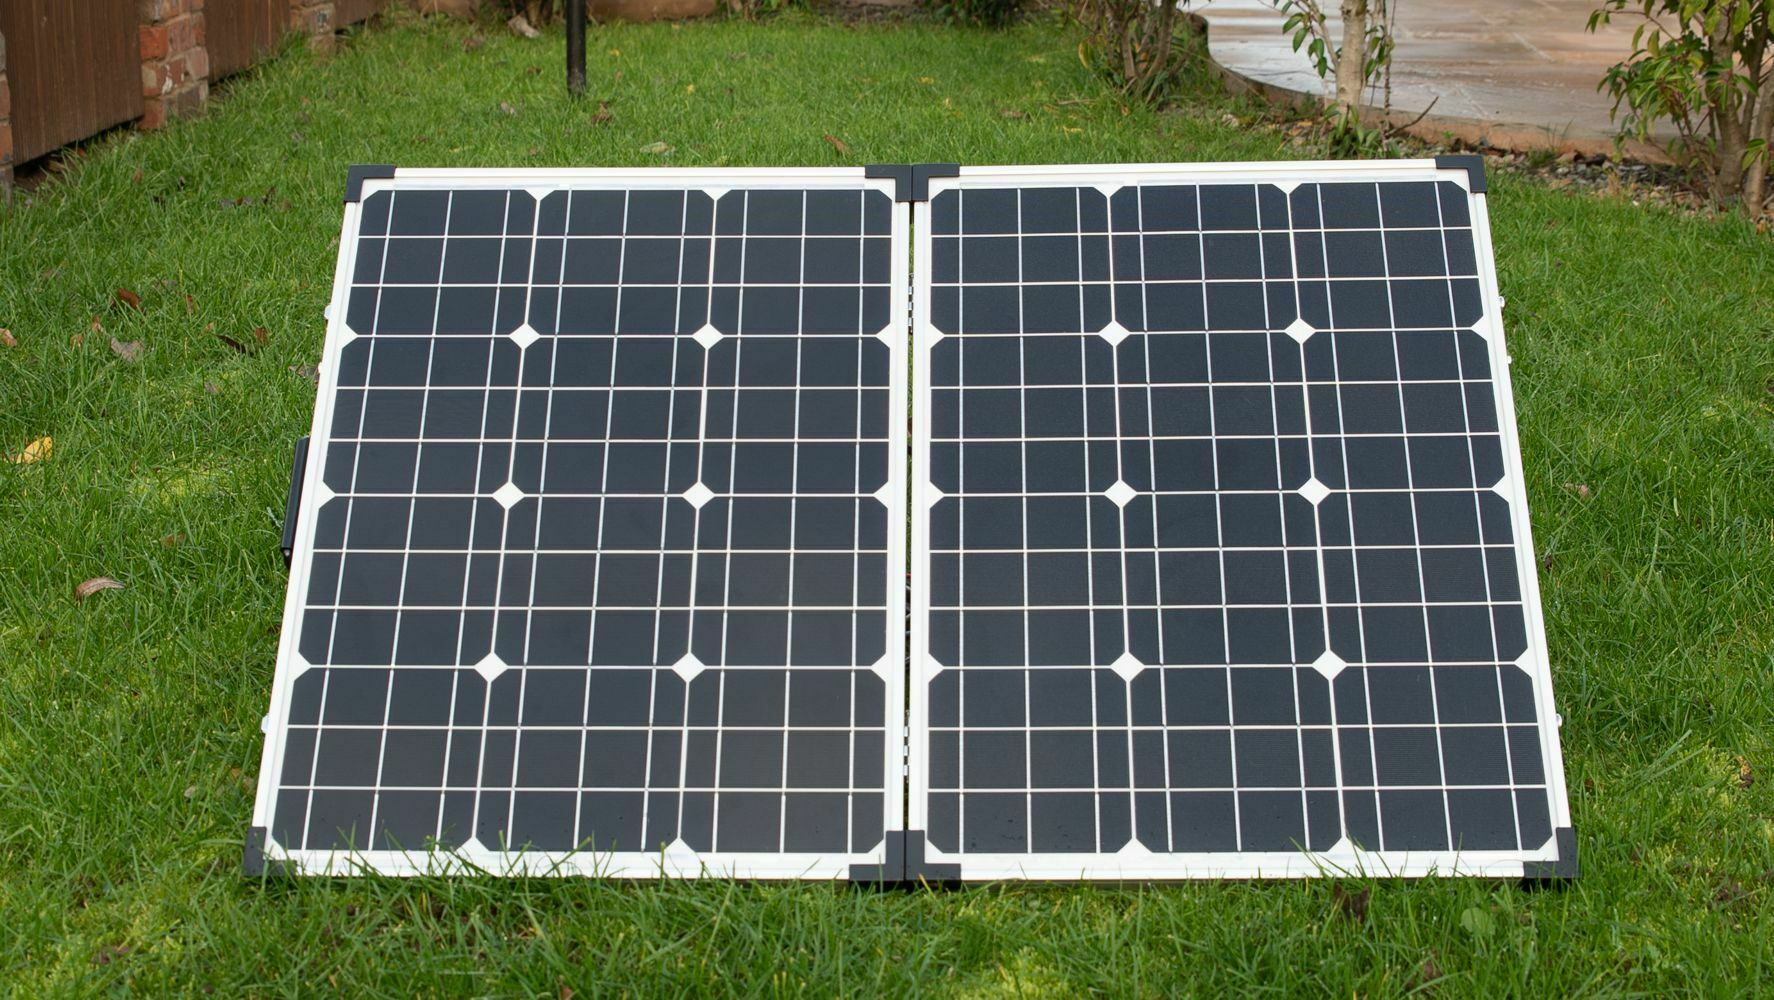 YUANFENGPOWER 100 Watt 12 V Falten Solar Panel Tragbare Solar Ladegerät Generator mit 10A Laderegler Kabel für Motohome Caravan Camping 